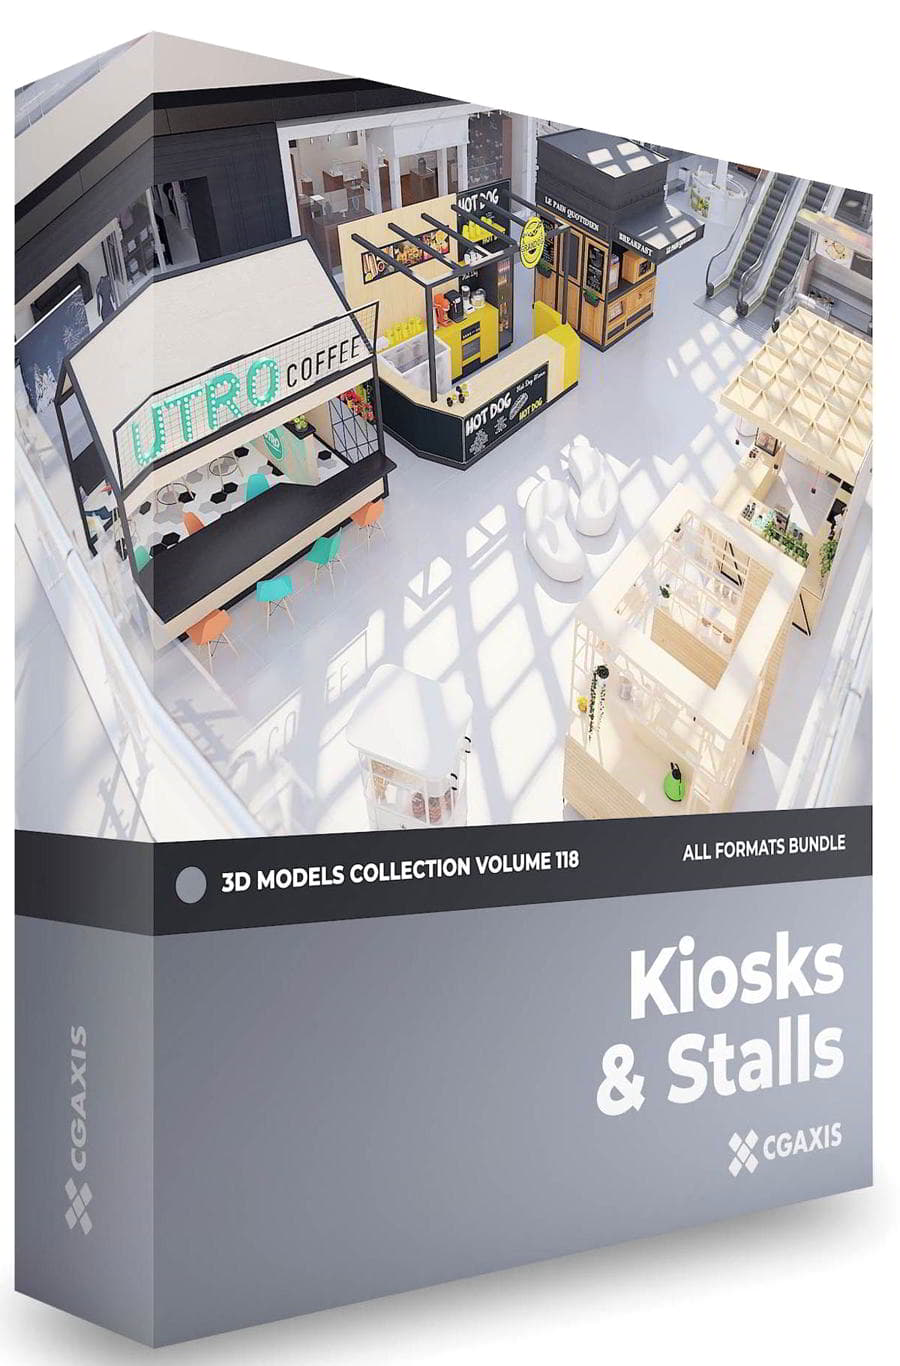 دانلود رایگان مدل سه بعدی غرفه فروشگاه CGAxis – Kiosks & Stalls 3D Models Collection – Volume 118